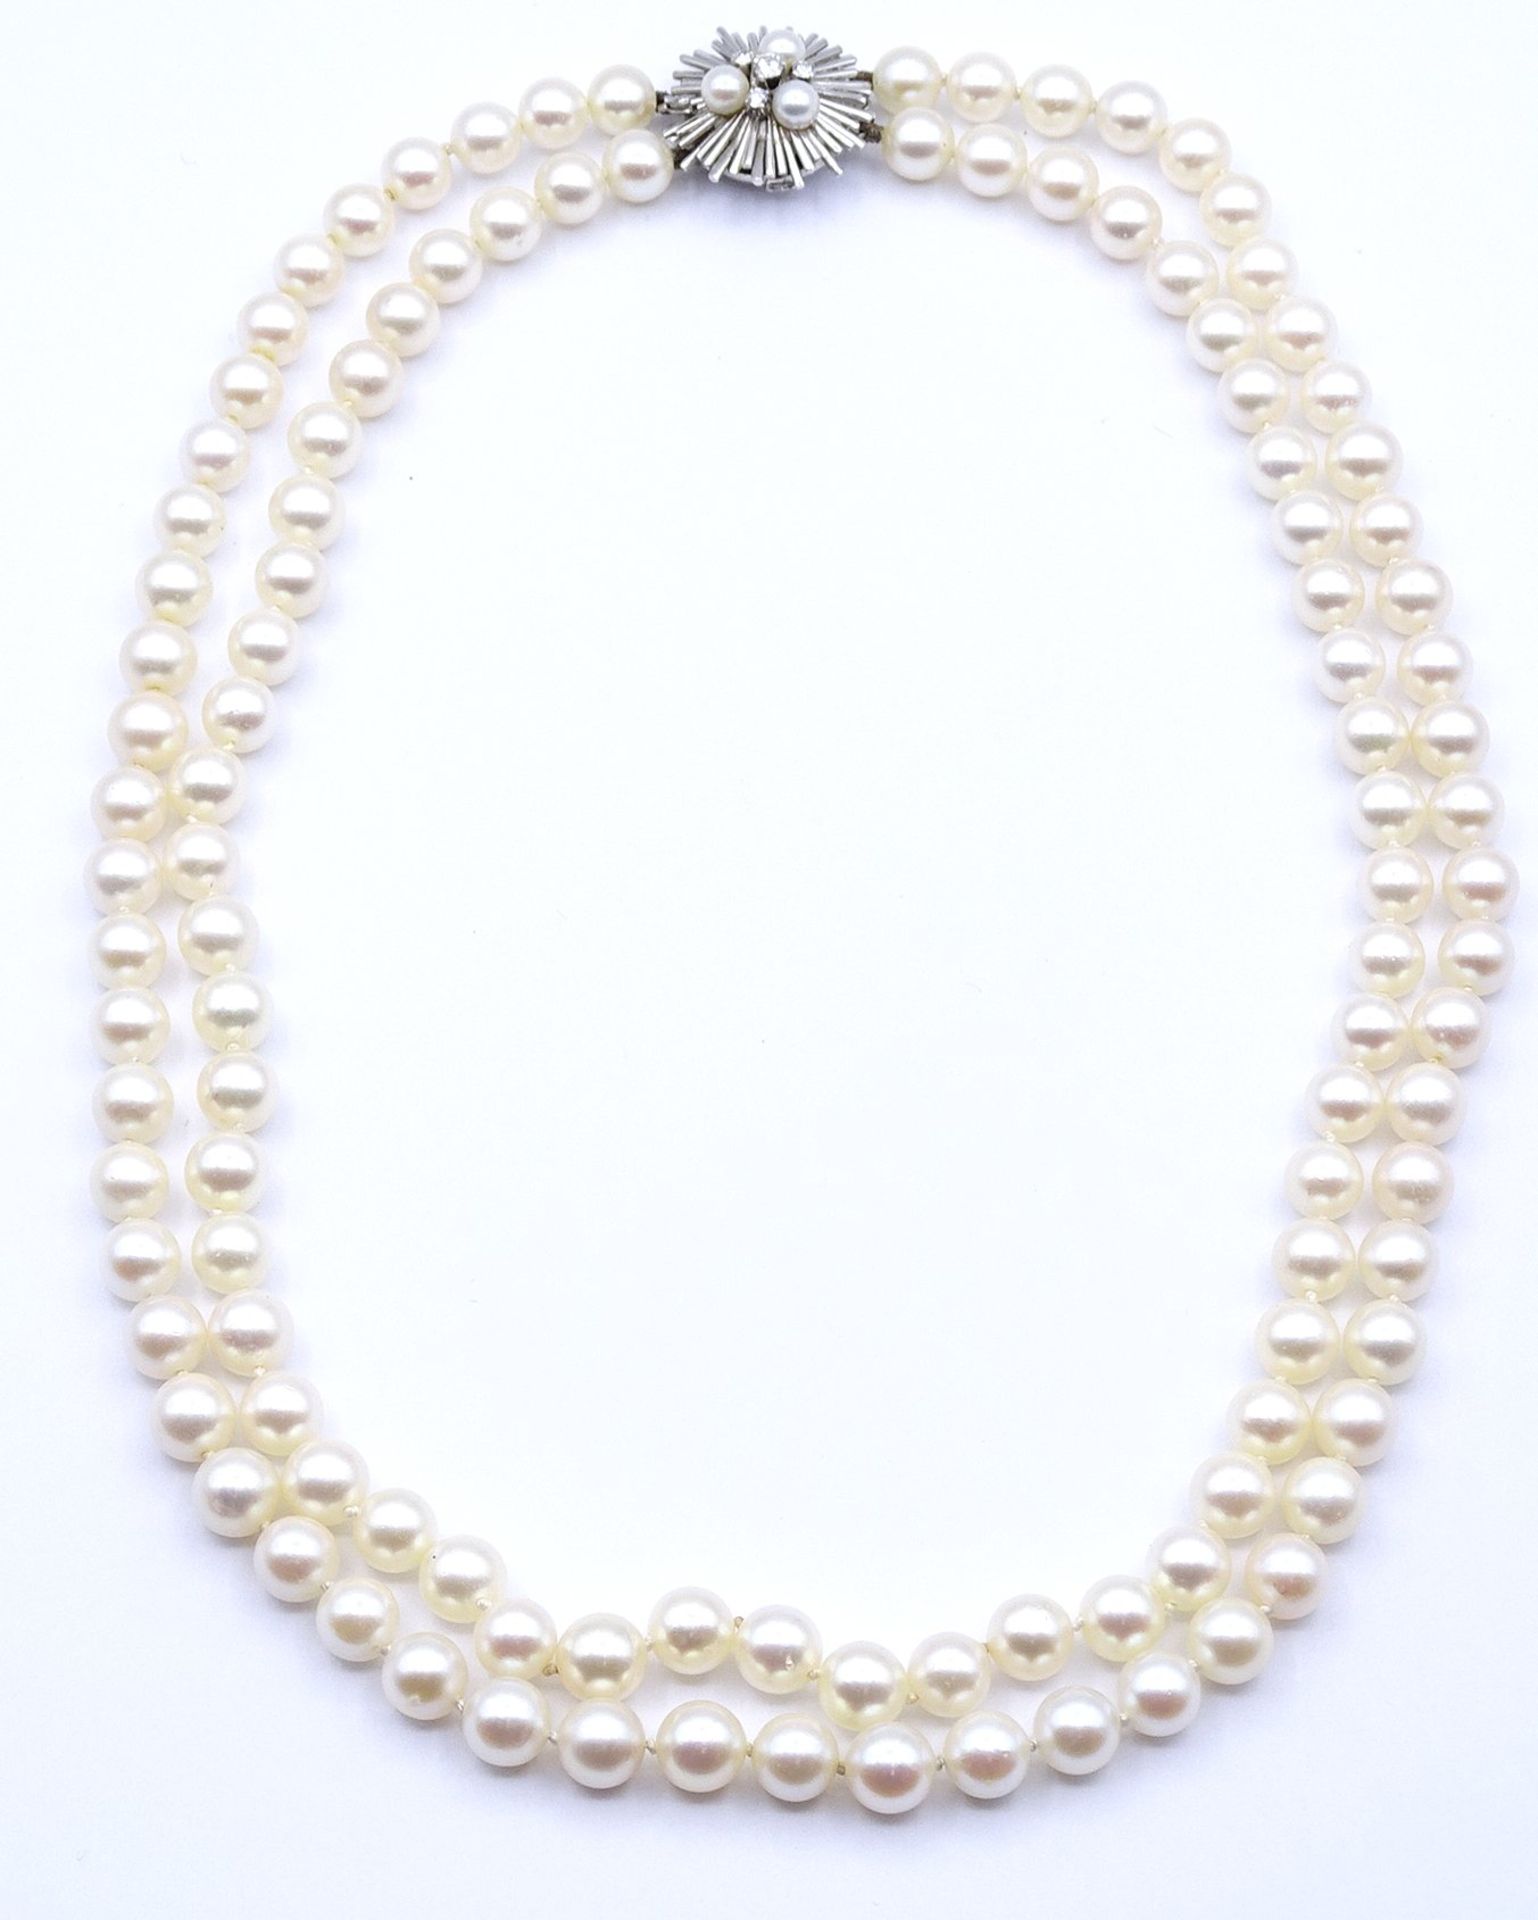 2-reihige Perlen Halskette mit Weißgoldverschluss 750/000, Verschluss mit 3 Perlen und 4 Brillanten - Image 5 of 11